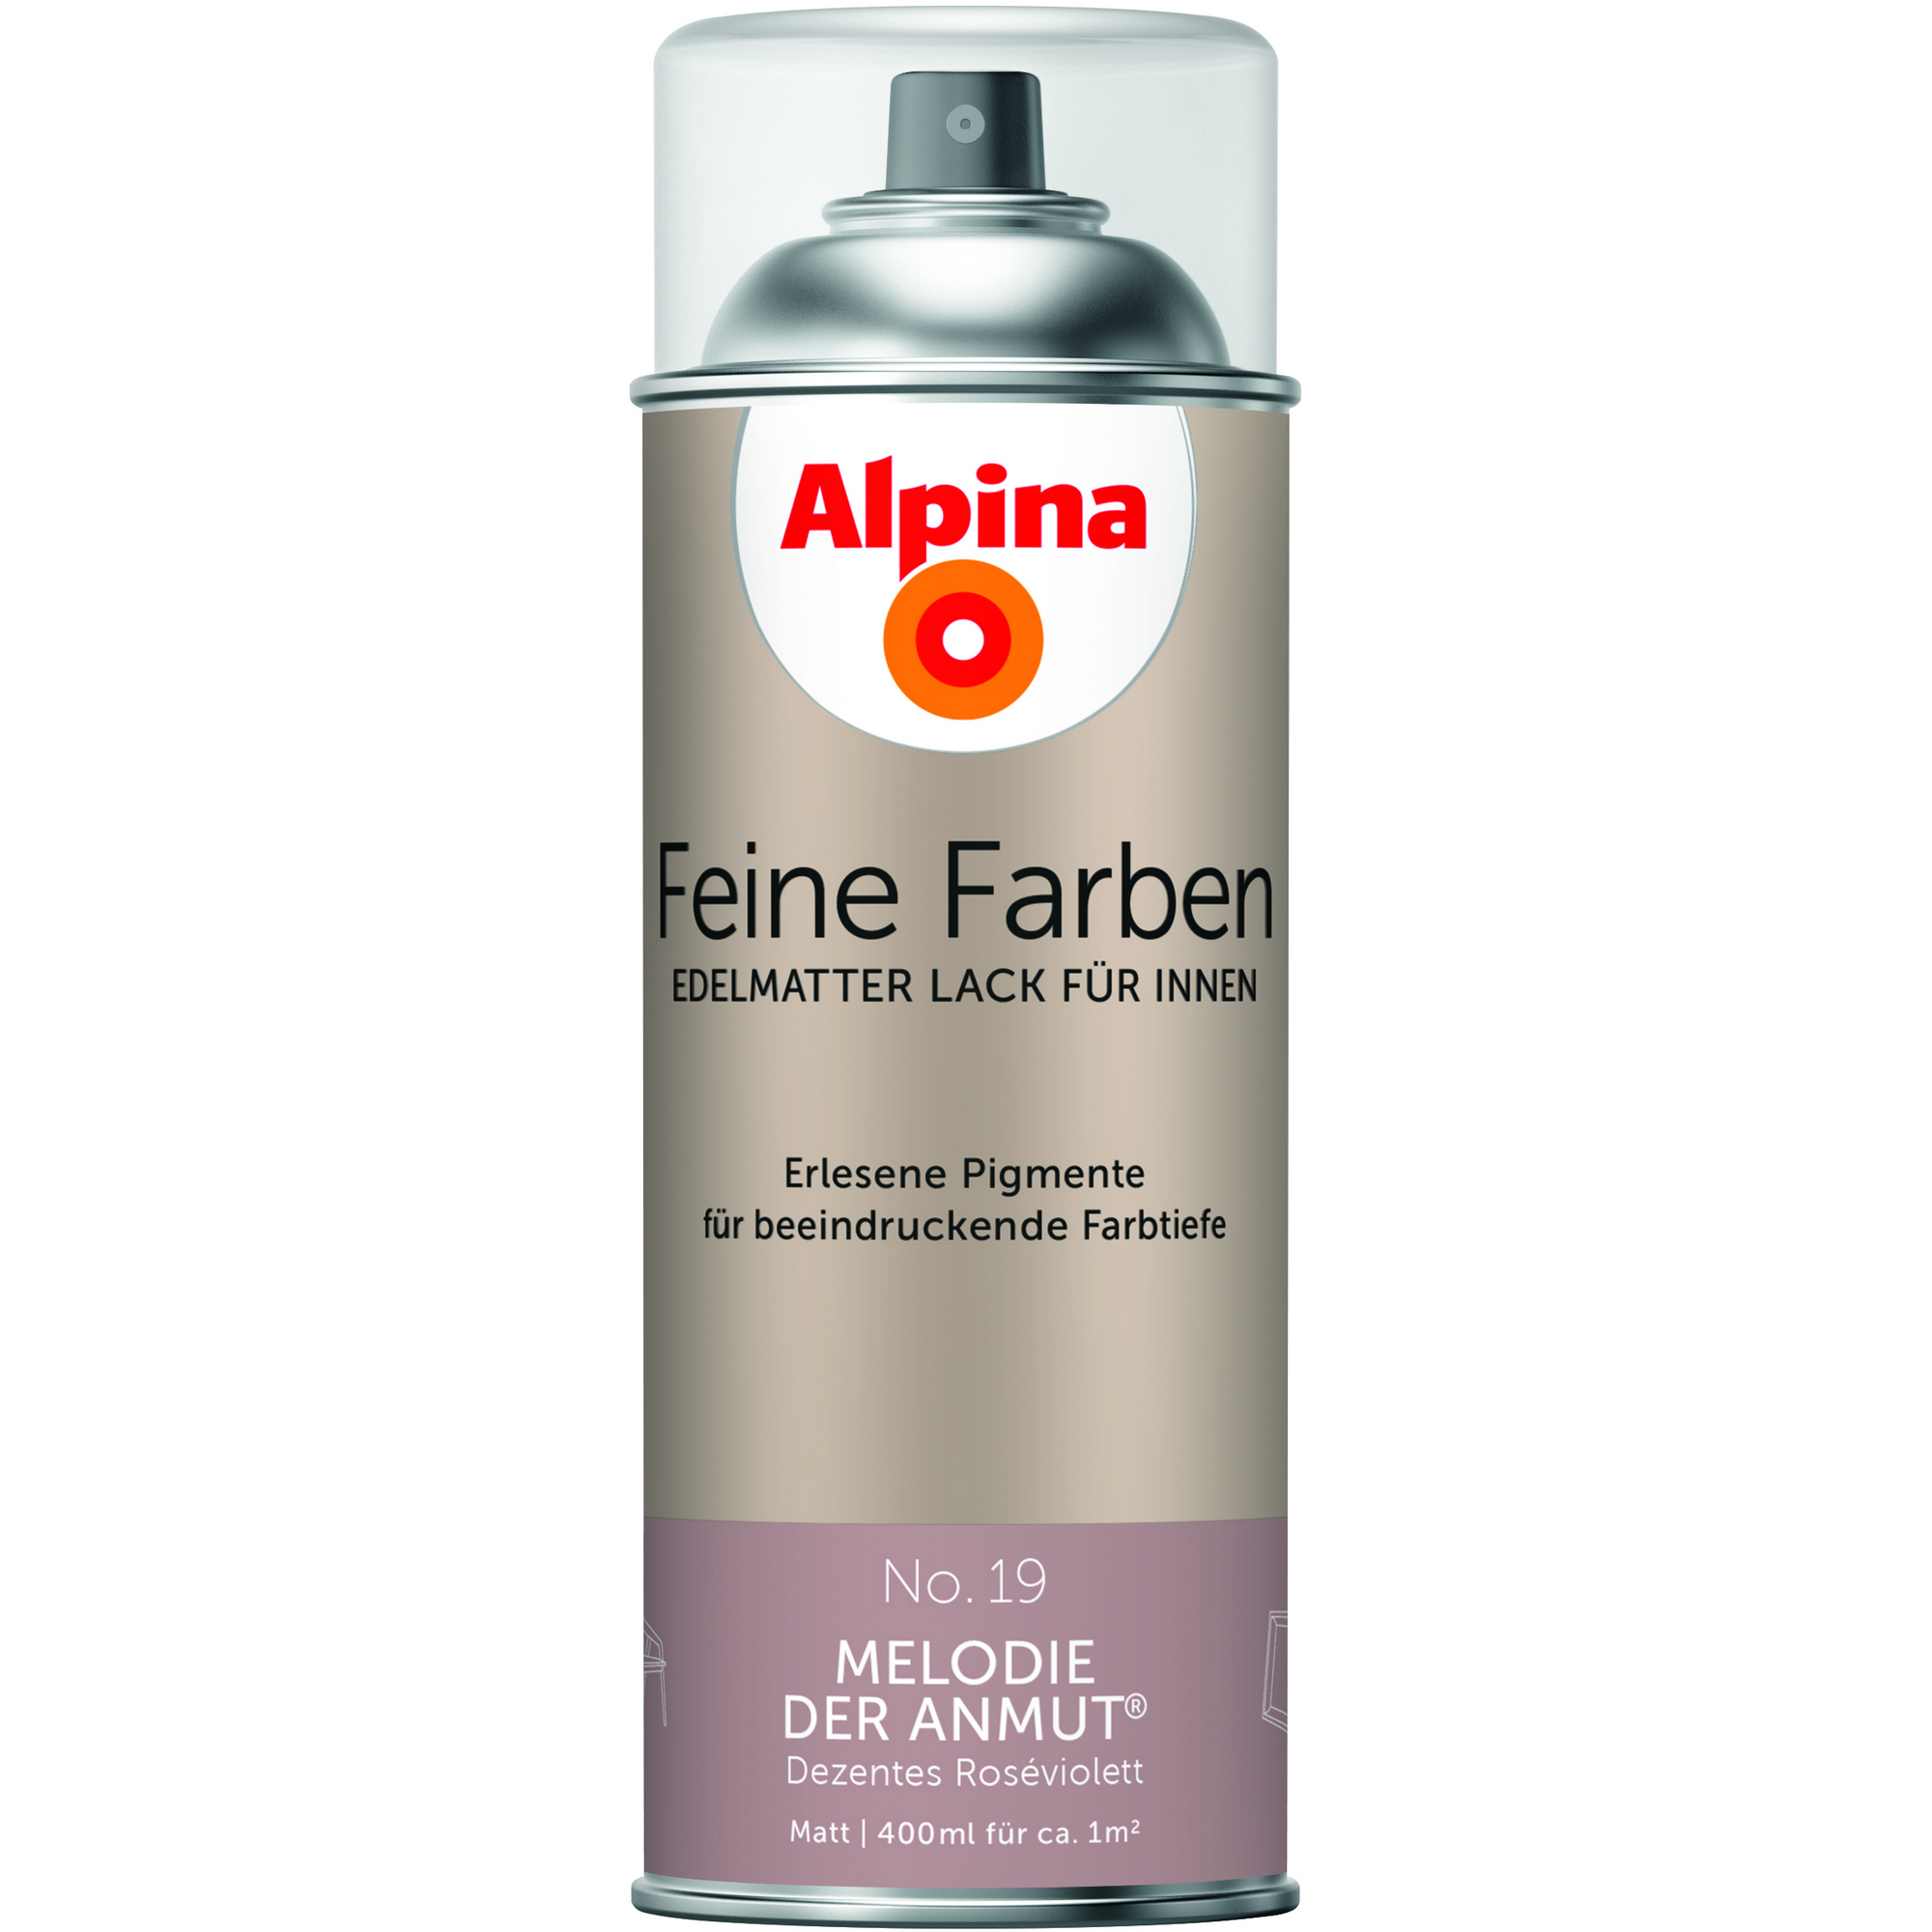 Feine Farben 'Melodie der Anmut' altrosa matt 400 ml + product picture